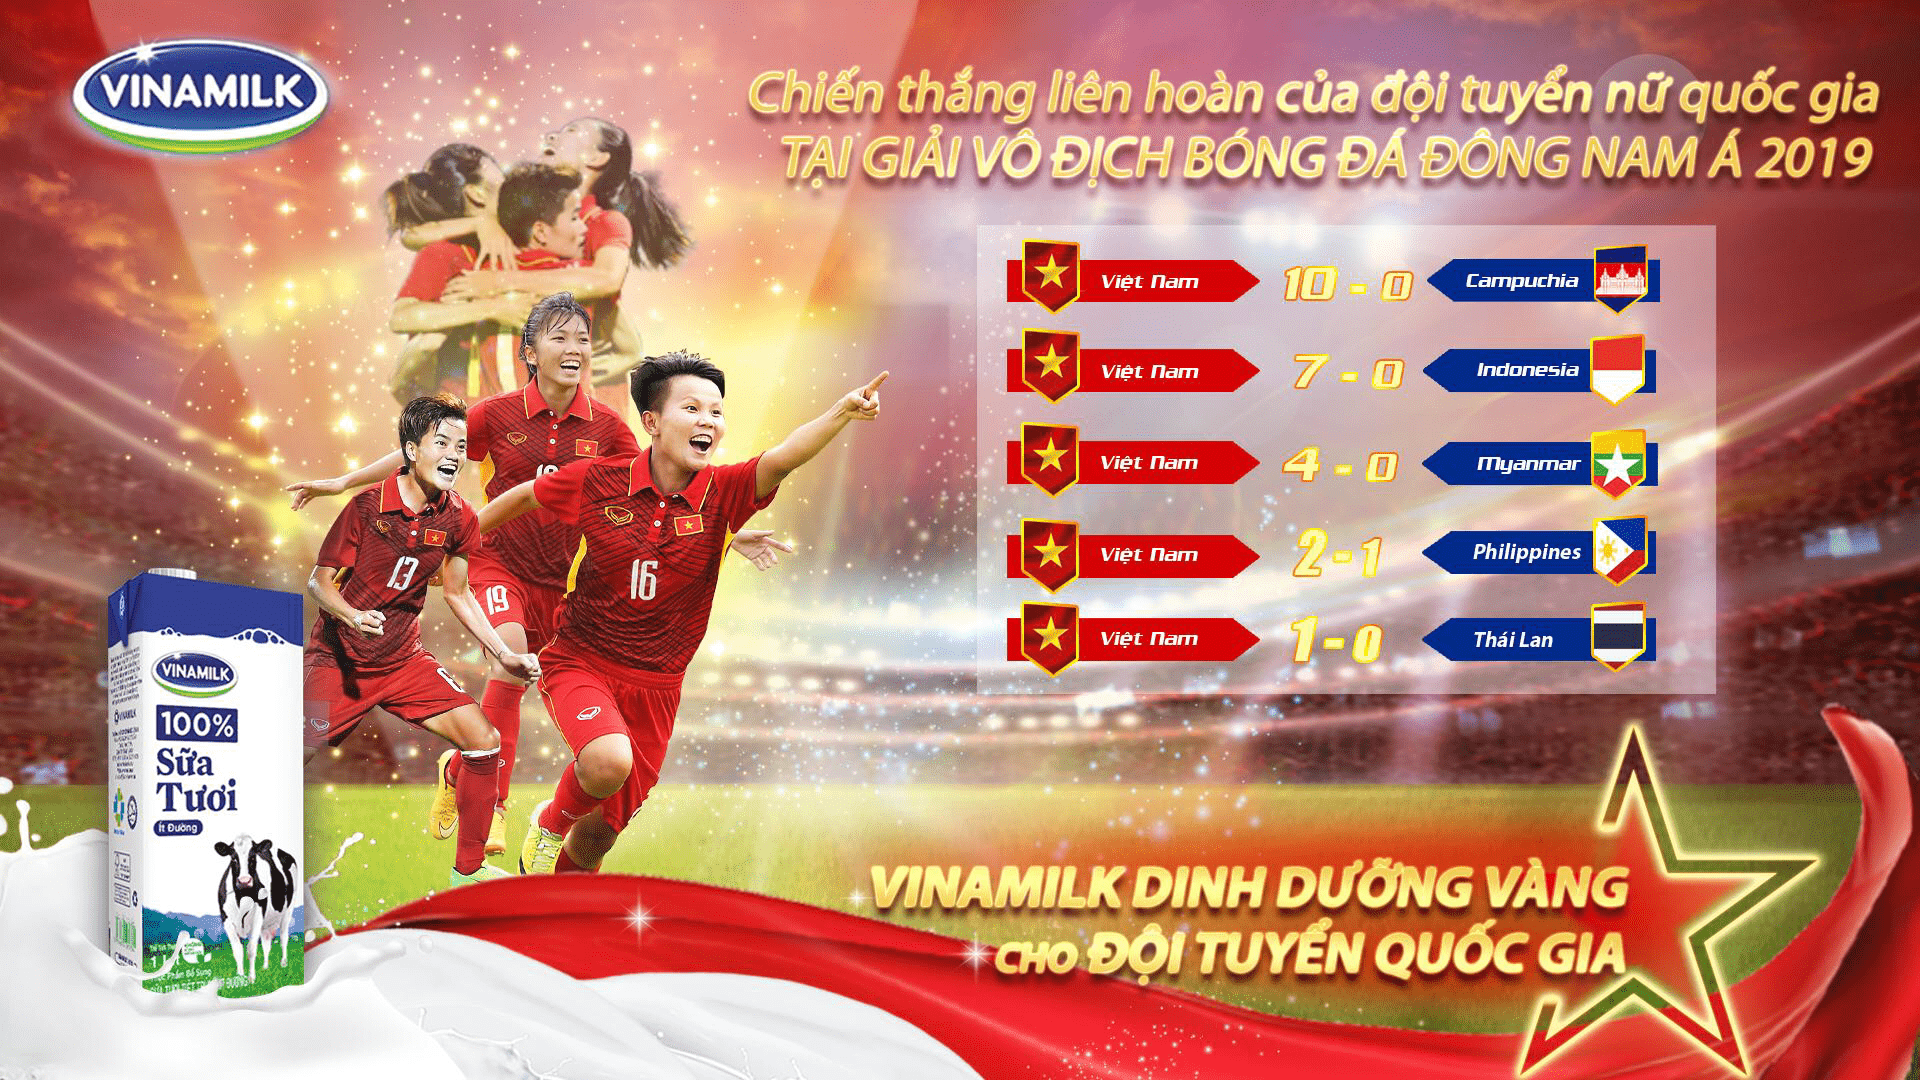 Cả nước tự hào với chiếc cúp danh giá và loạt trận “toàn thắng” mà đội tuyển nữ mang về từ Thái Lan.